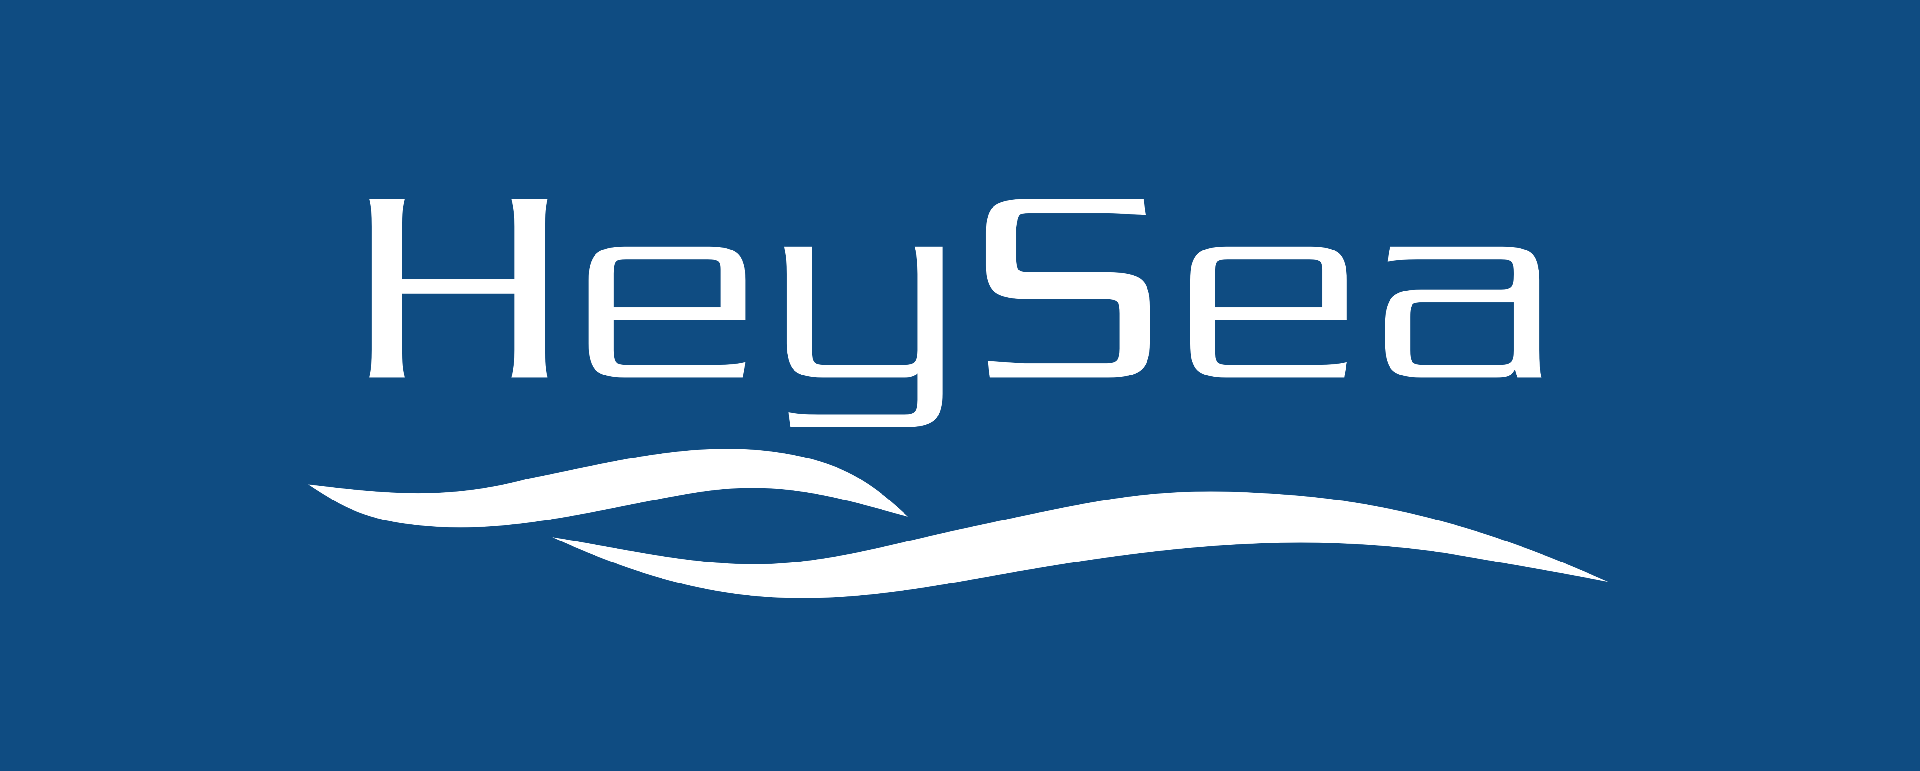 heysea logo  反白版.png